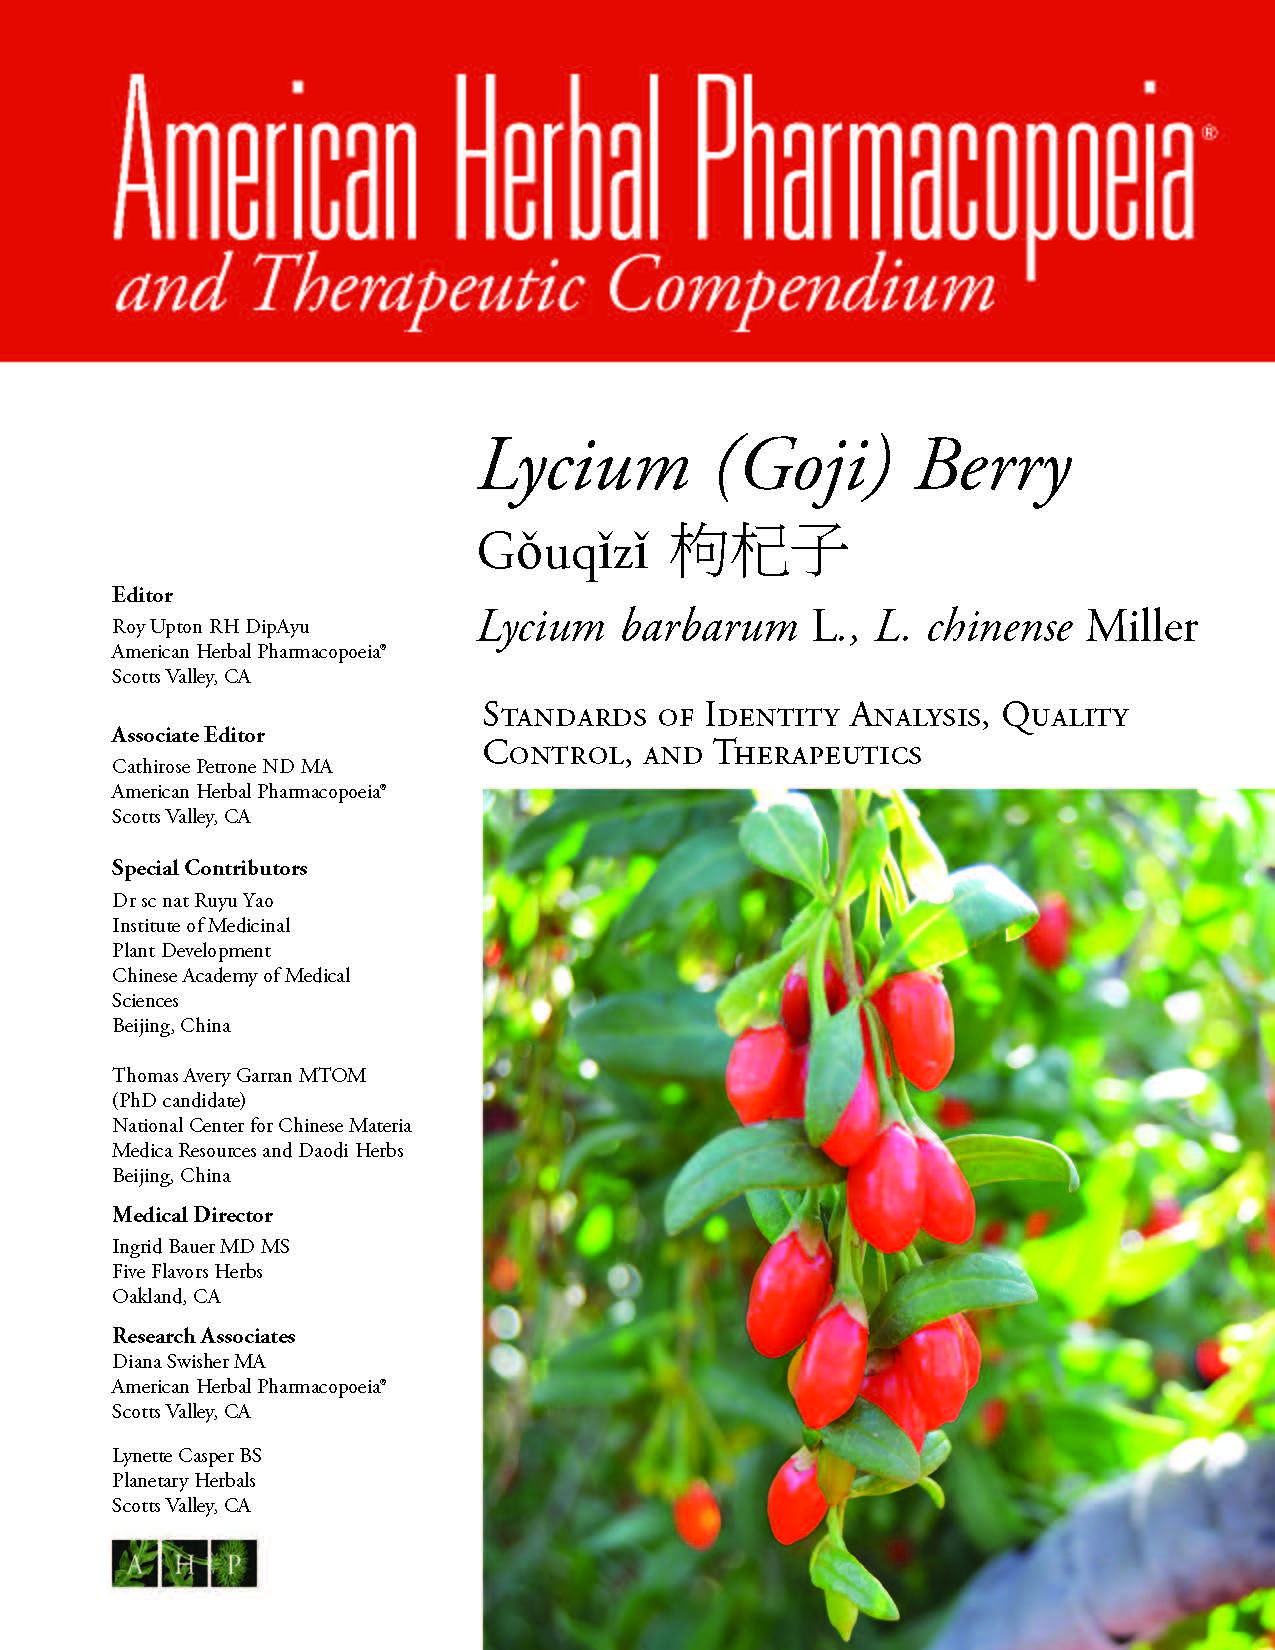 Lycium; goji; gouqizi; Herb Whisperer; American Herbal Pharmacopoeia